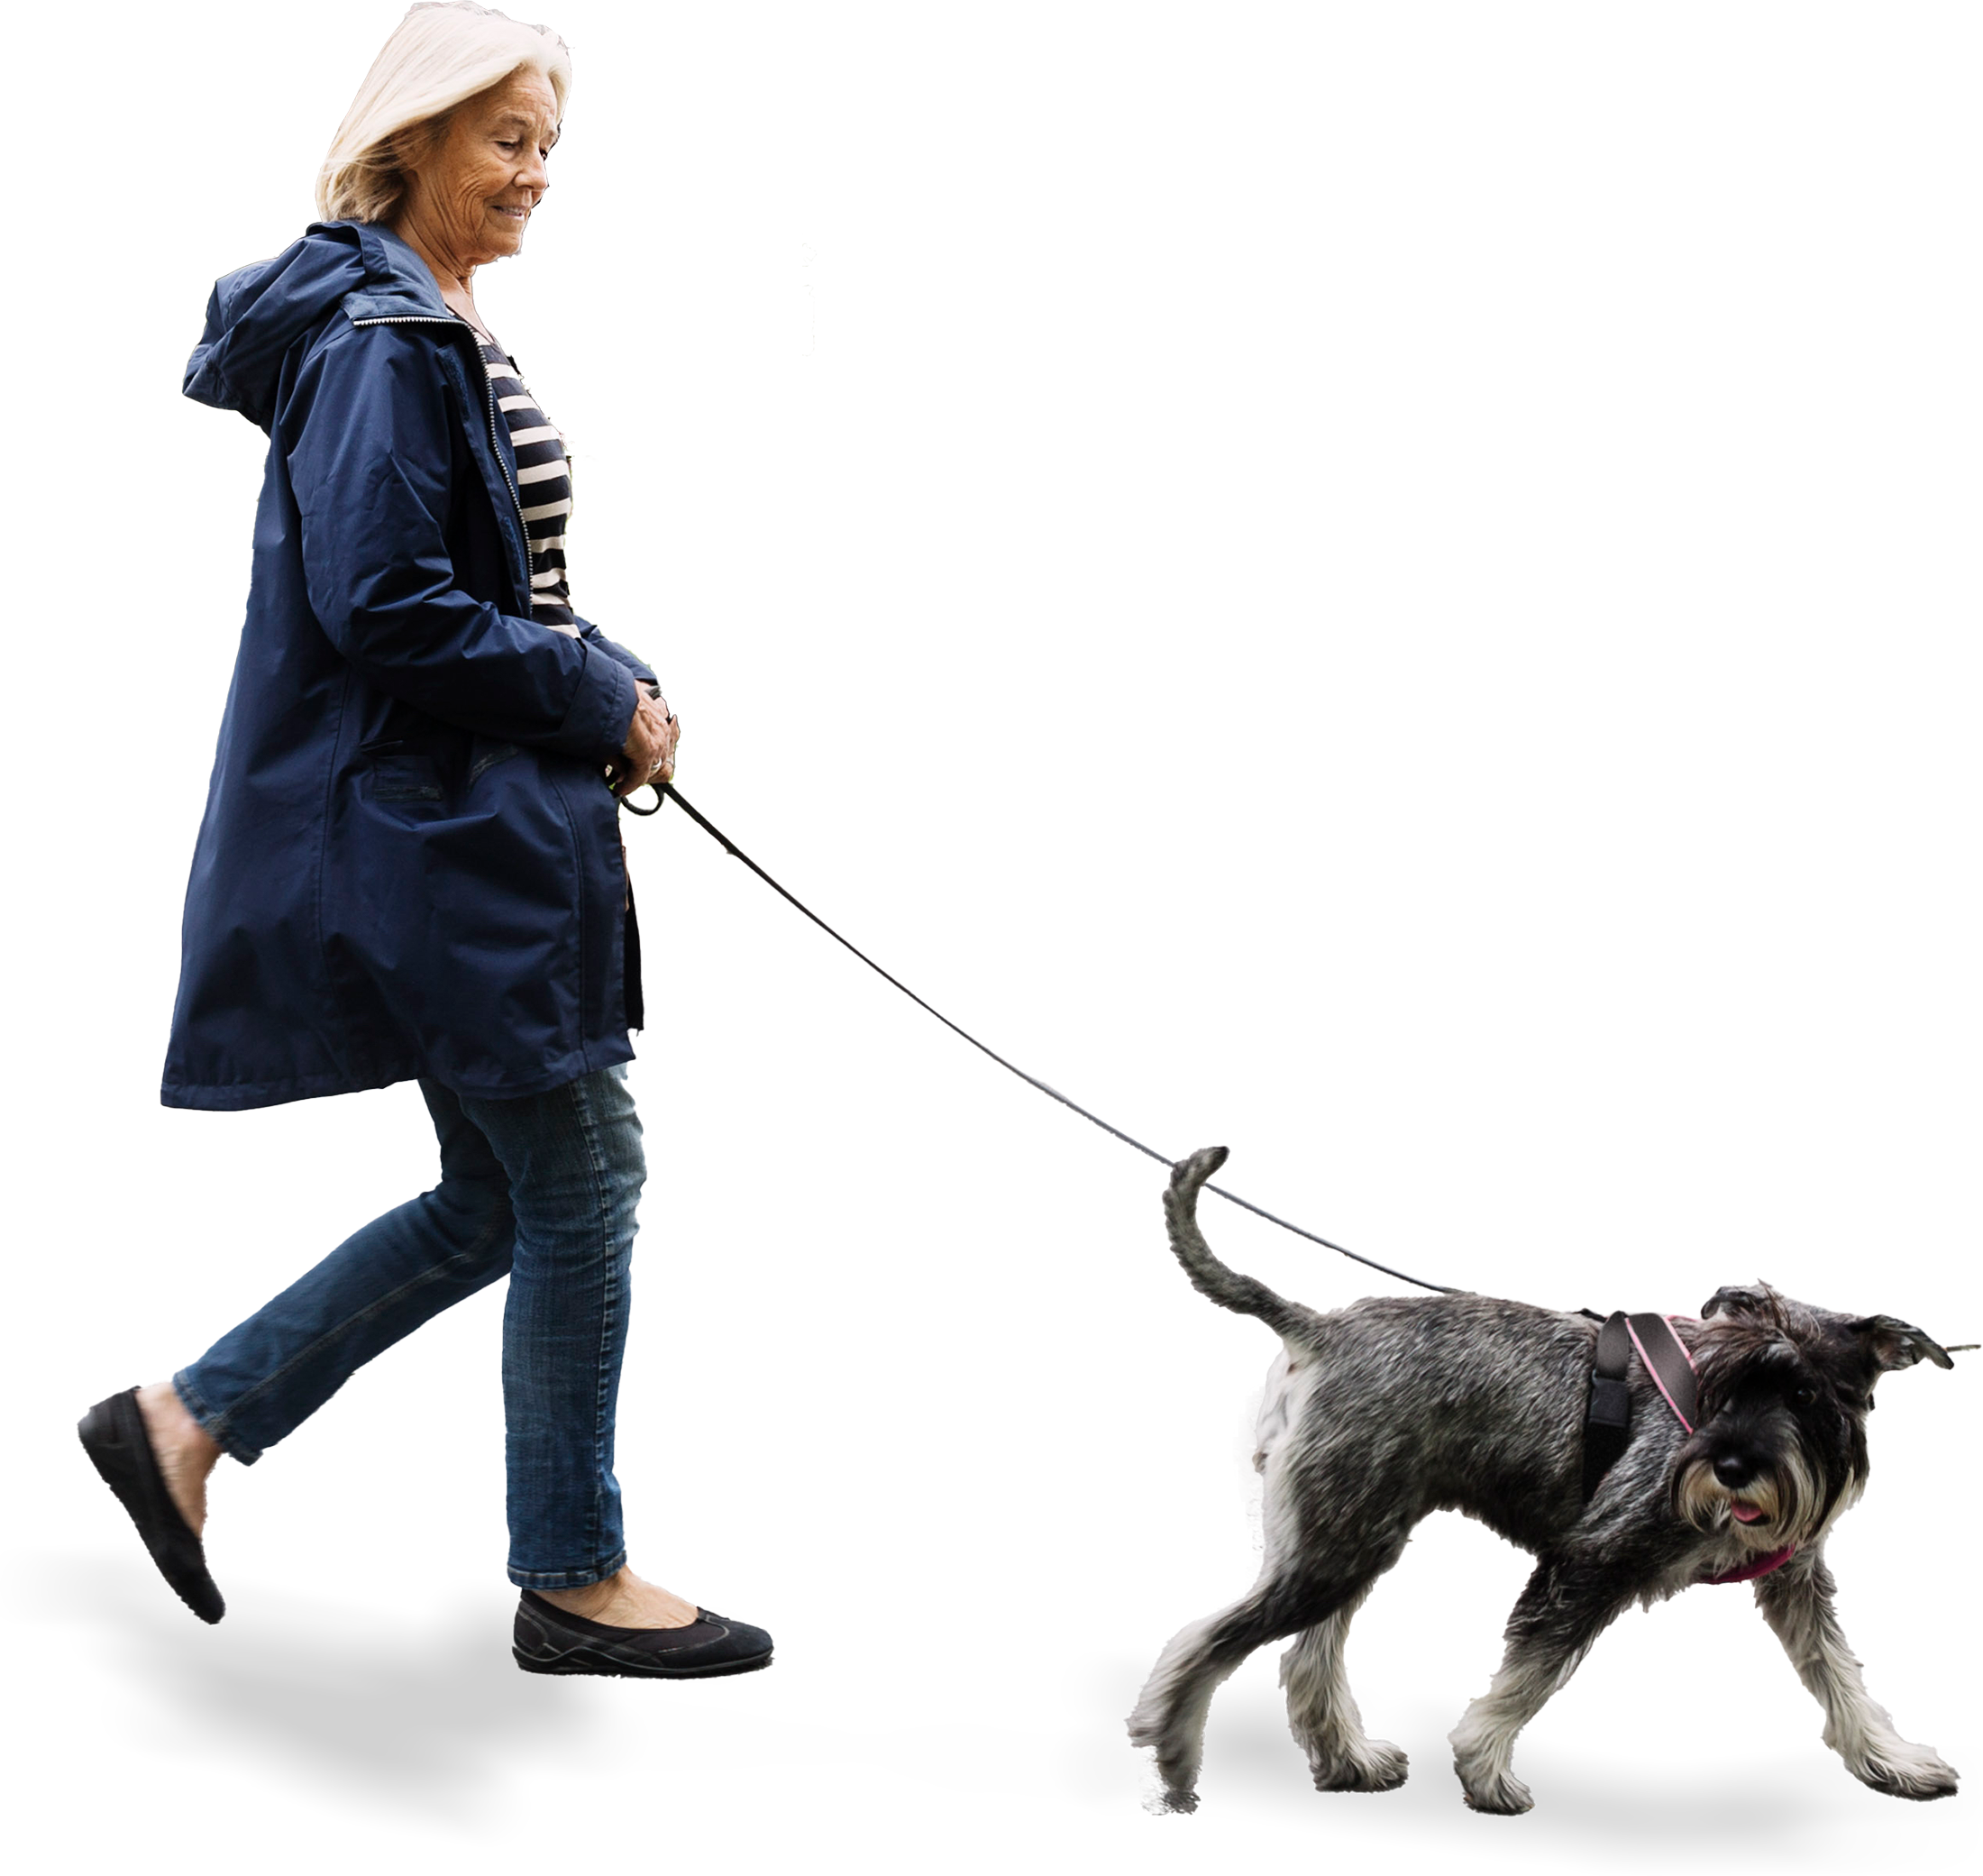 Woman walking dog